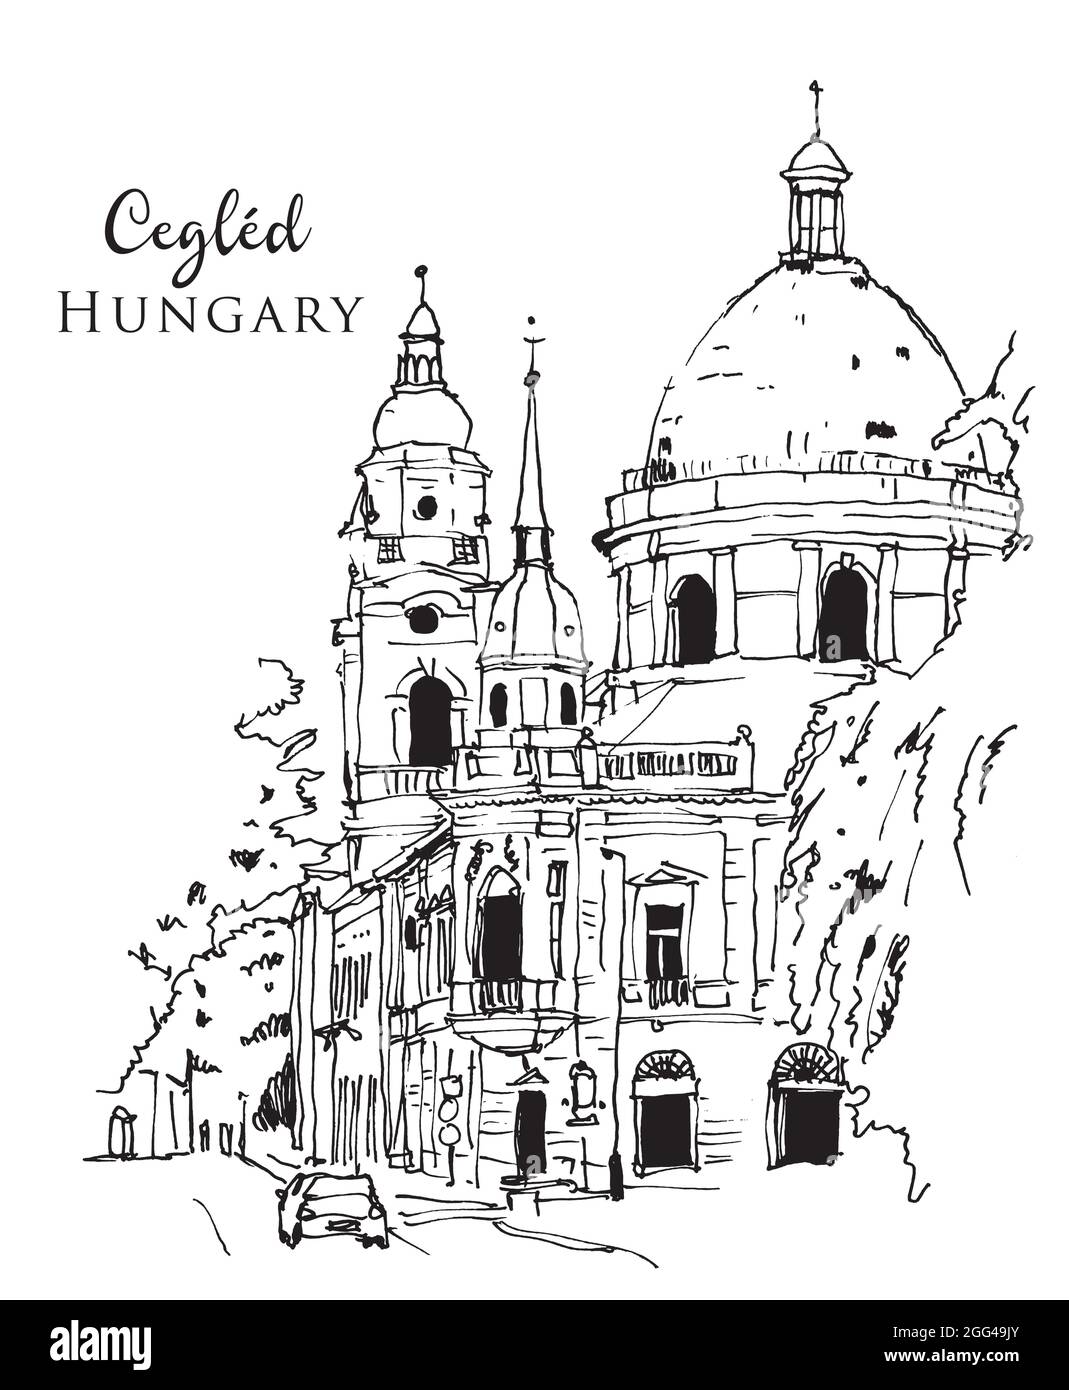 Vektor handgezeichnete Skizzendarstellung der kalvinistischen Kirche von Cegled, Ungarn Stock Vektor